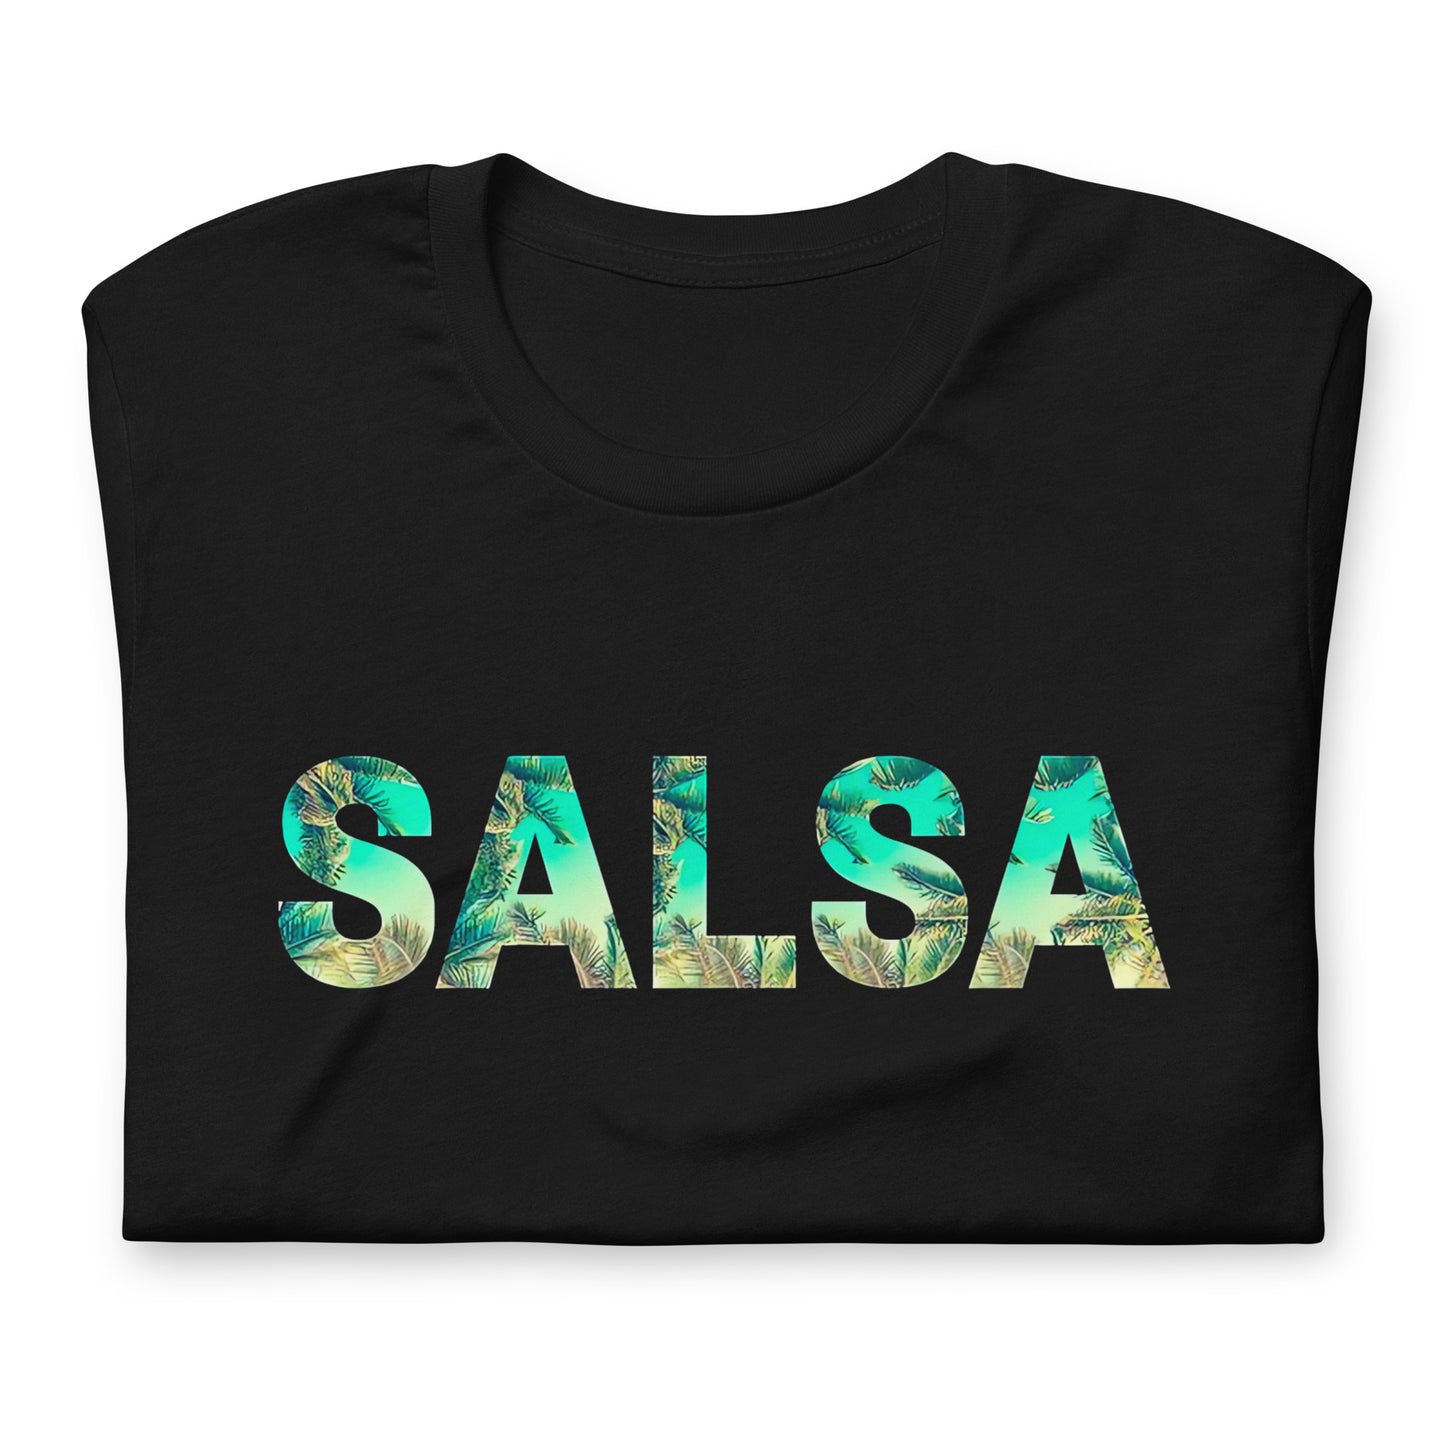 Muestra tu orgullo colombiano con la Camisa de SALSA. Diseñada con los mejores materiales y un estampado duradero.